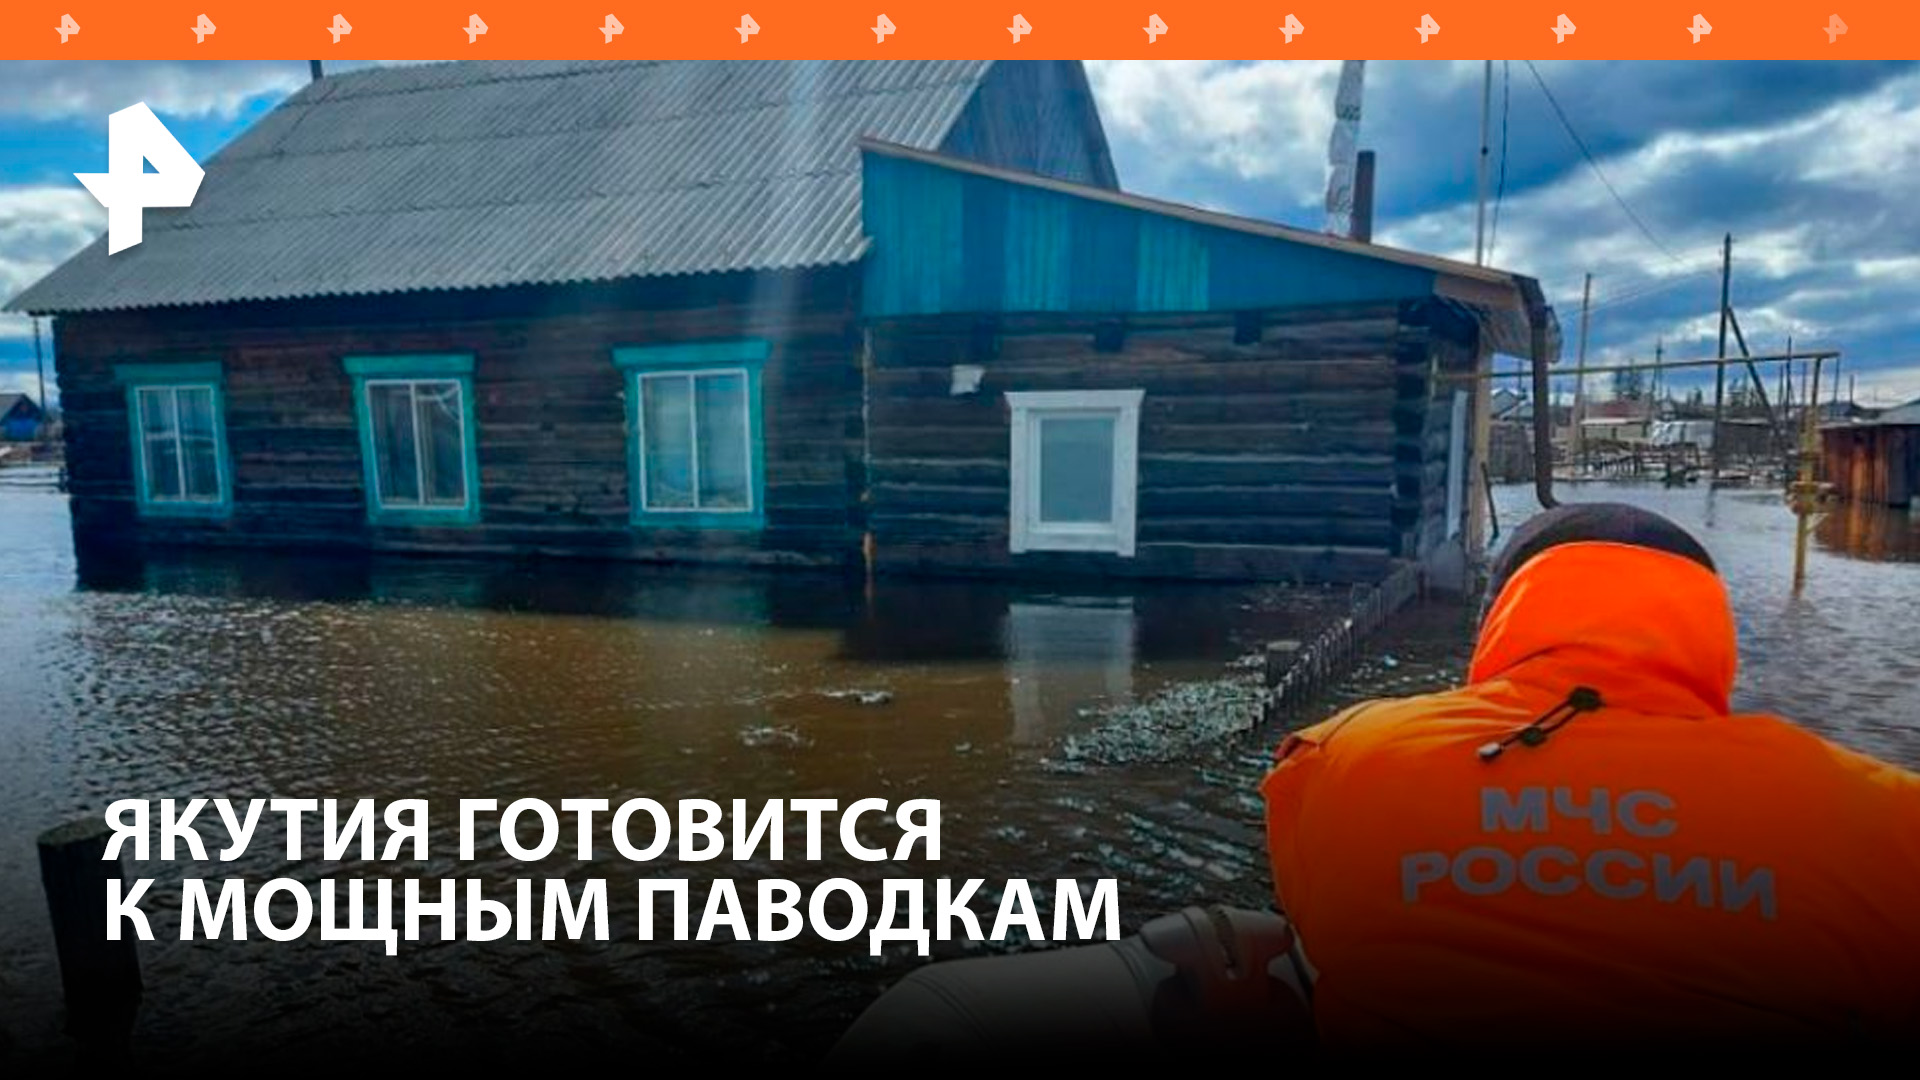 В Якутии готовятся к масштабным паводкам / РЕН Новости